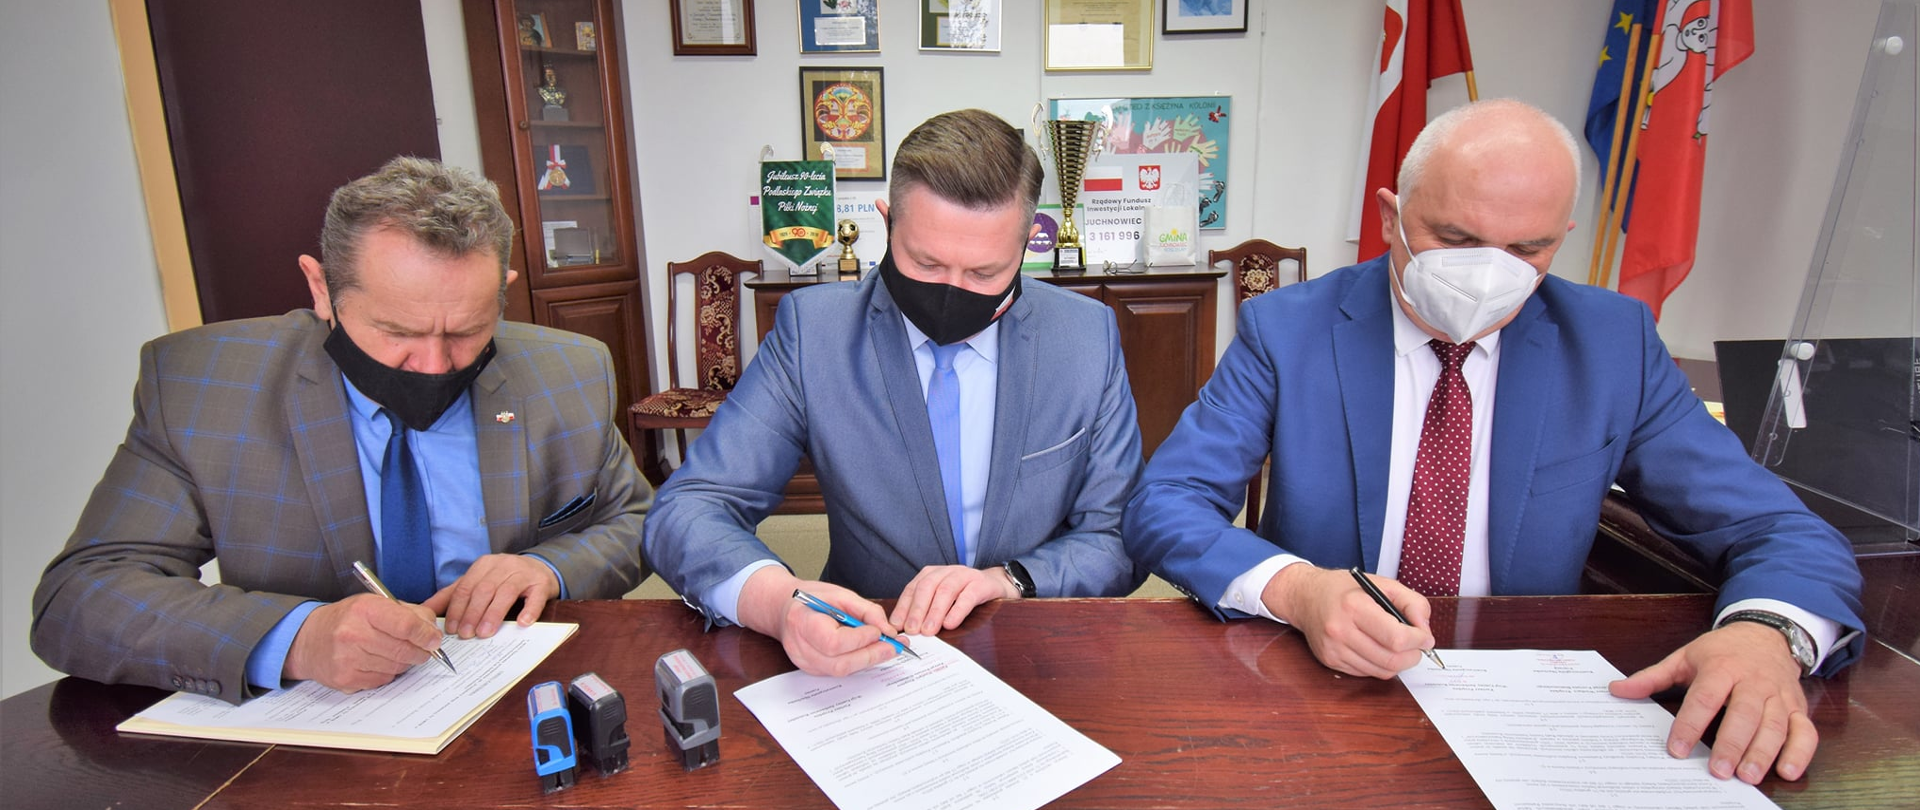 Podpisywanie umowy przez Starostę, członka zarządu, wójta Gminy Juchnowiec